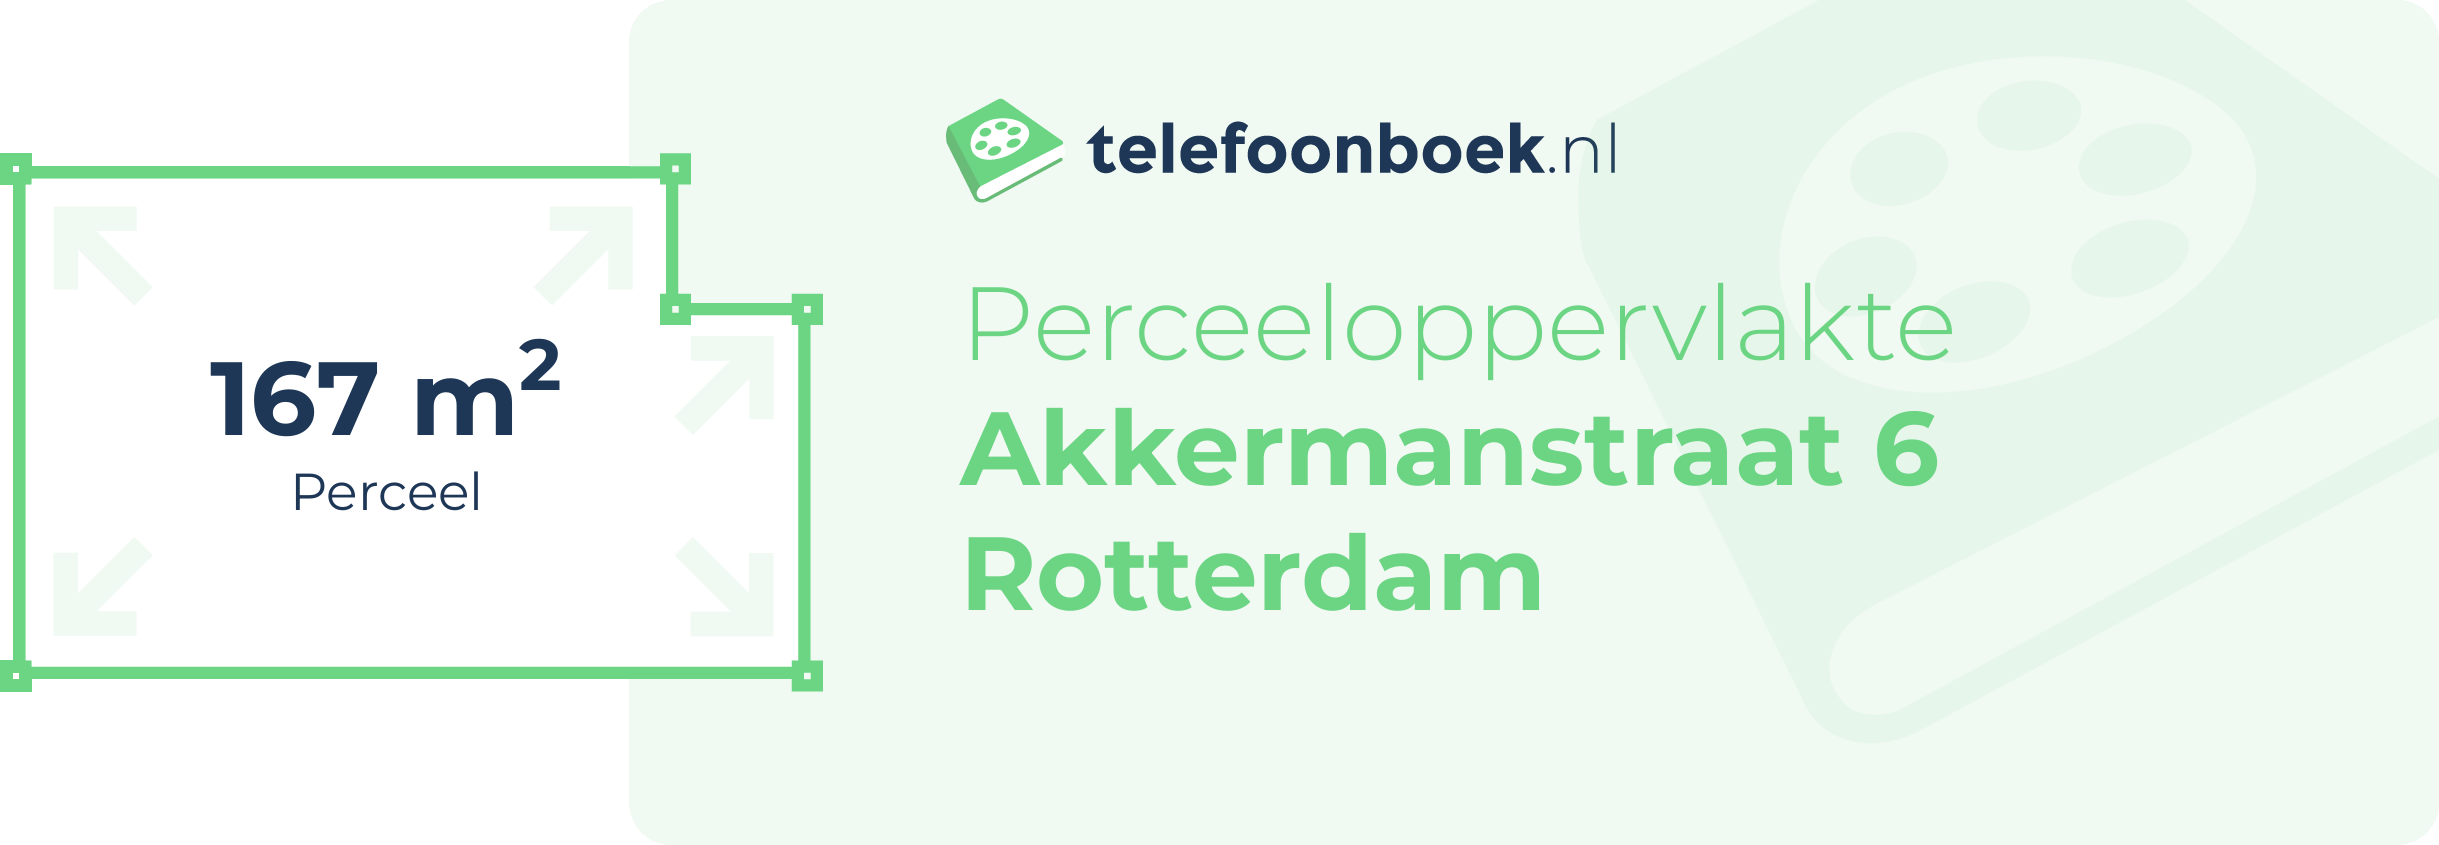 Perceeloppervlakte Akkermanstraat 6 Rotterdam